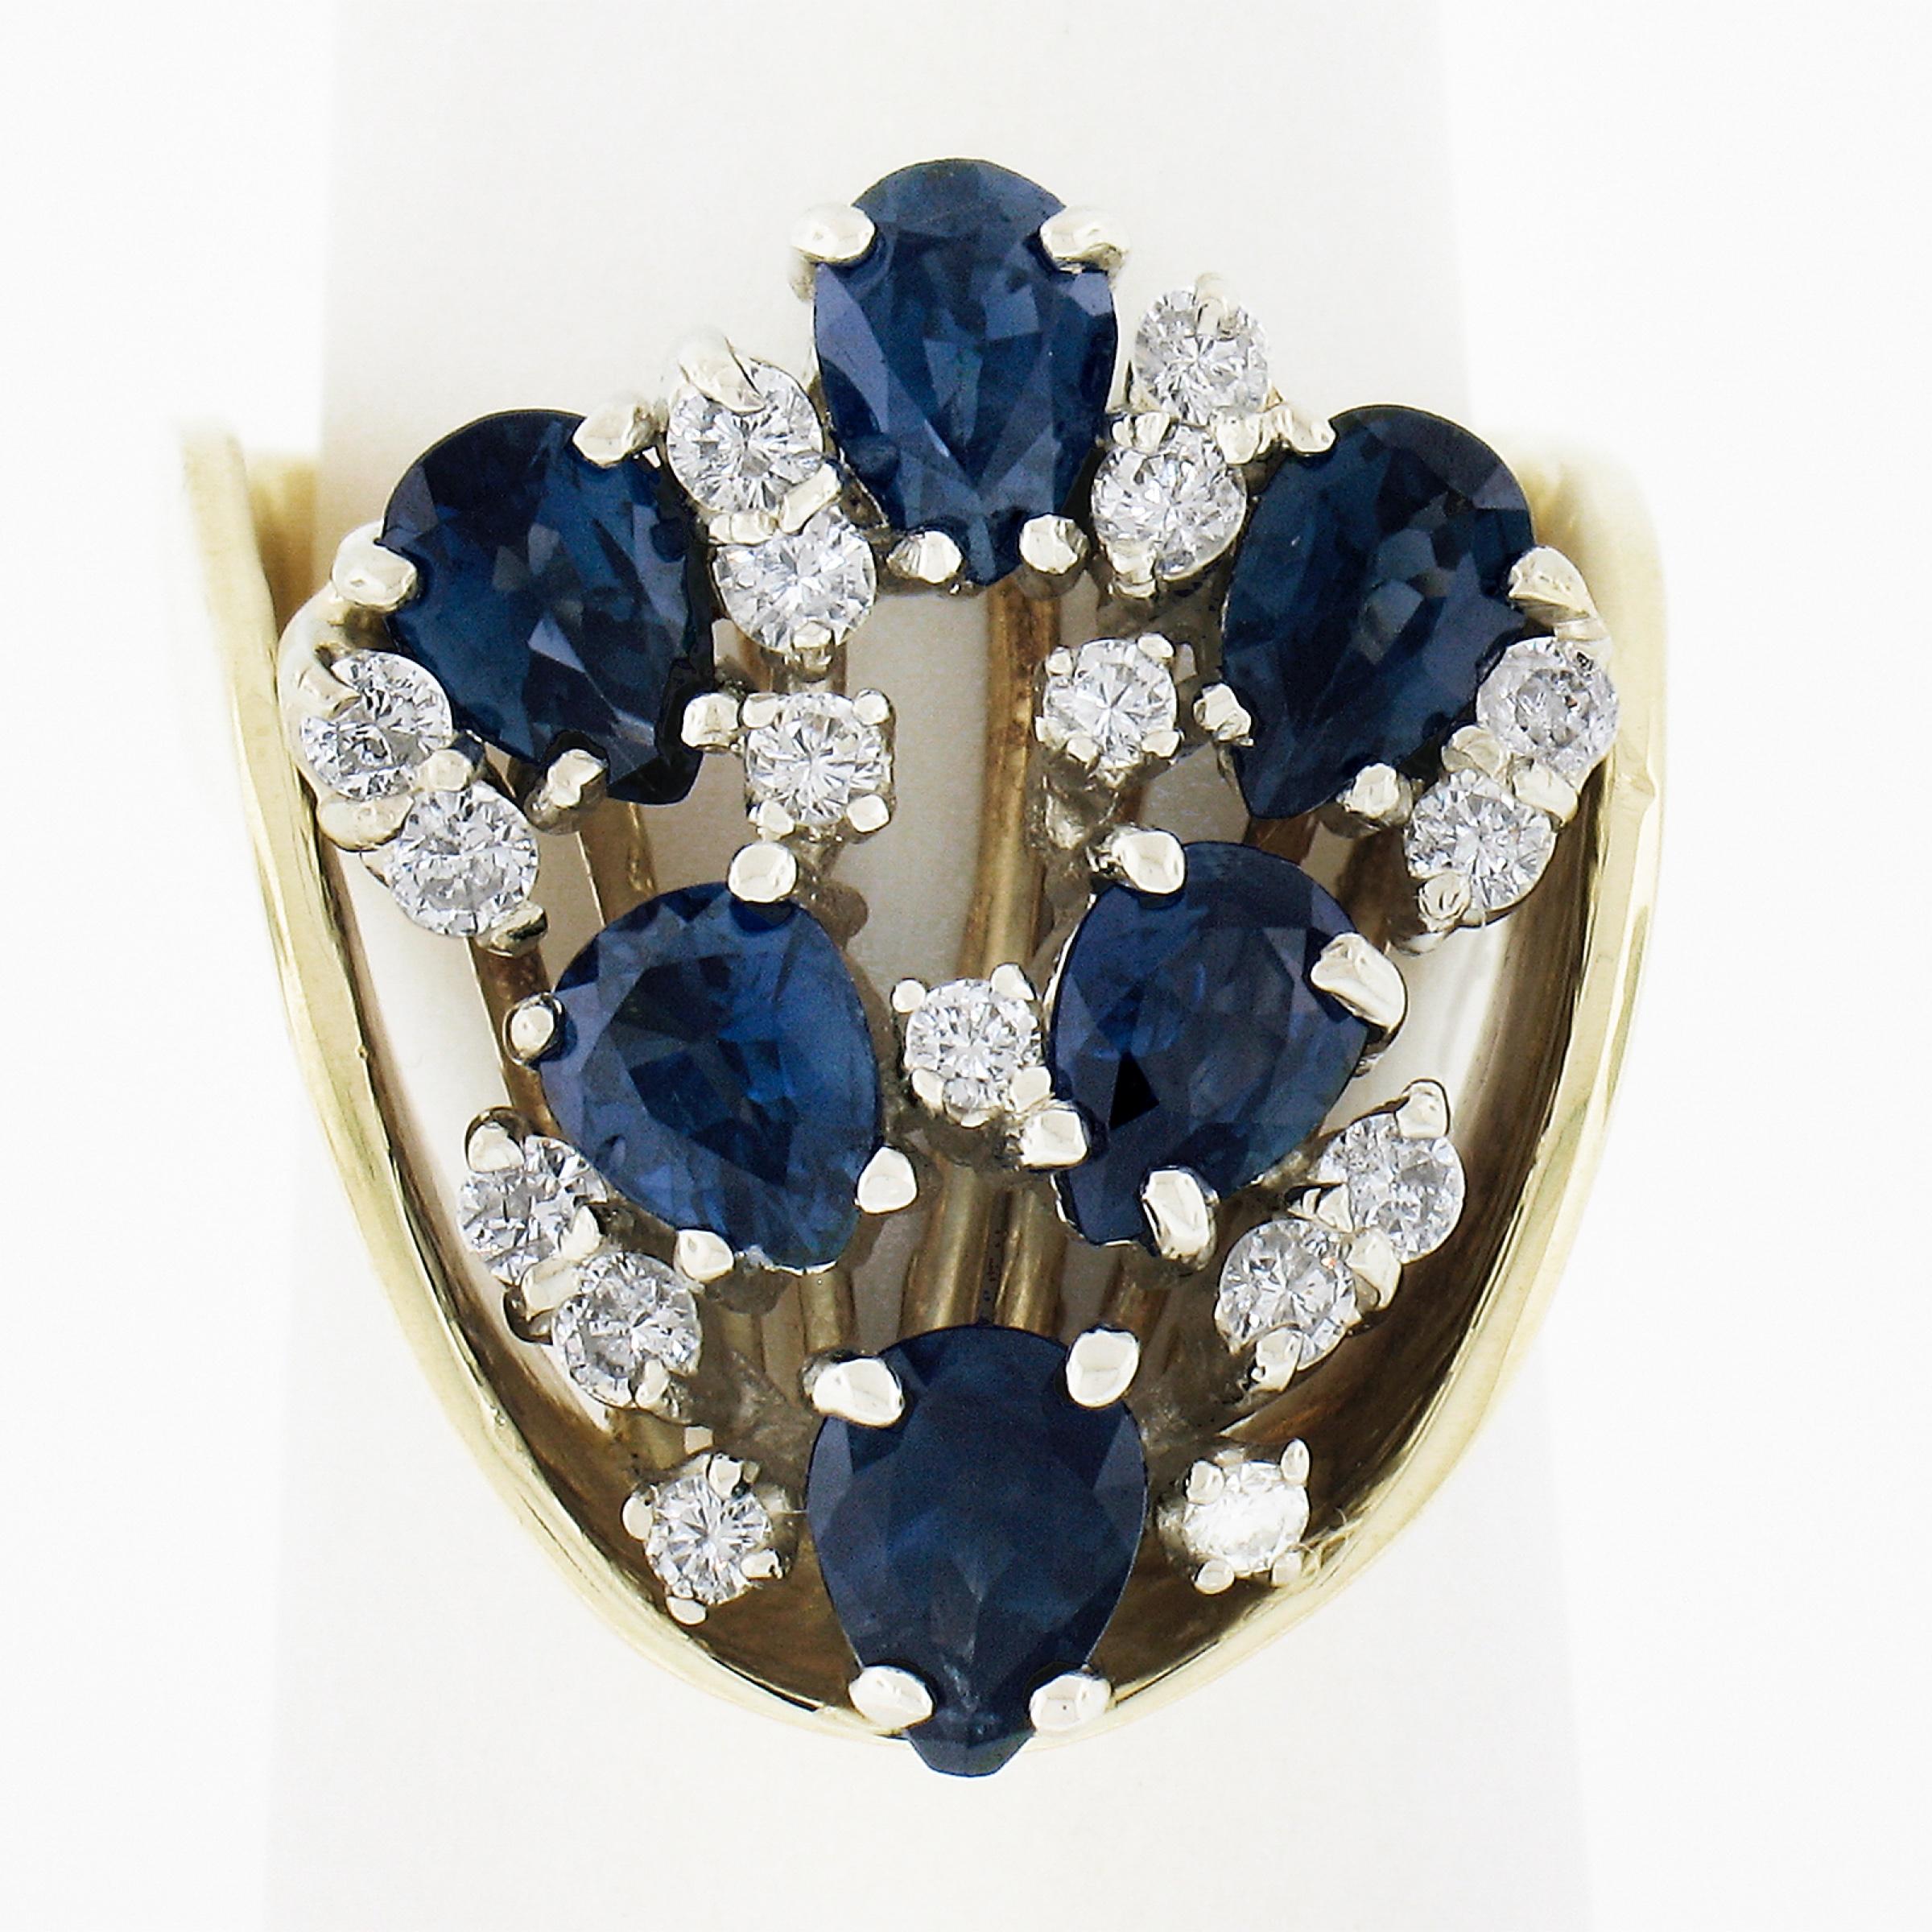 --Pierre(s) :...
(17) Diamants véritables naturels -  Taille ronde brillante - Serti - Clarté VS2-I1 - Couleur G/H - 0.30ctw (approx.)
(6) Saphirs véritables naturels - taille poire - sertis - couleur bleu royal - 2,40ctw (approx.)
Poids total en